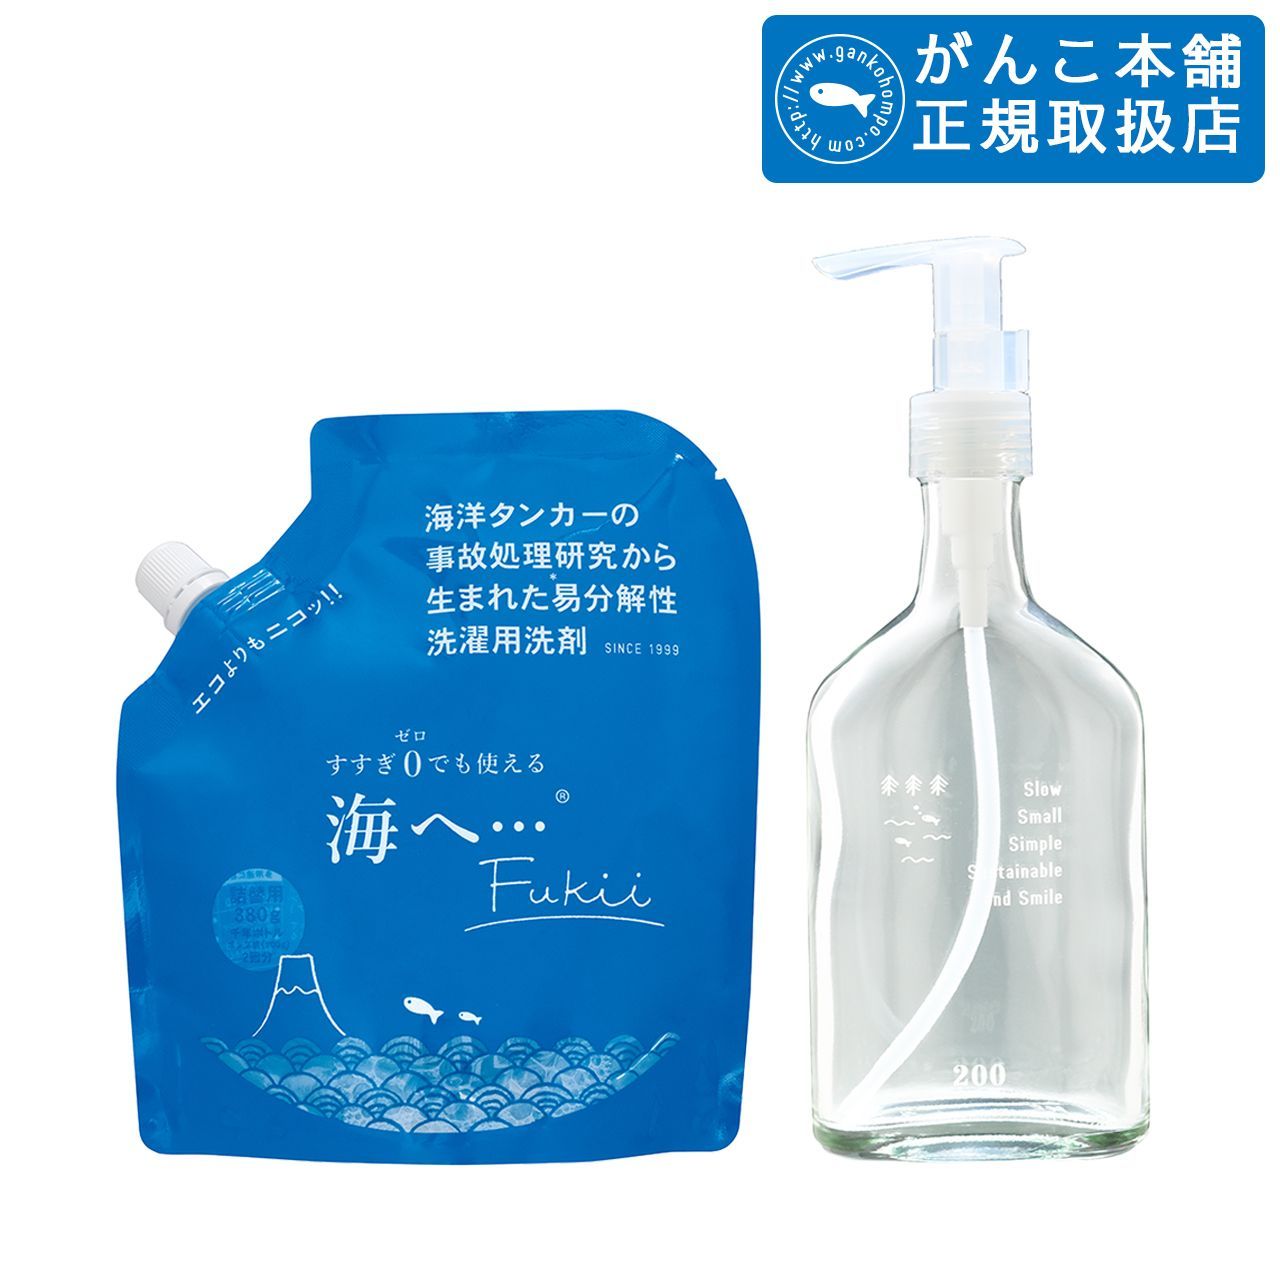 がんこ本舗 海へ… Fukii 洗濯用洗剤 - 洗濯洗剤